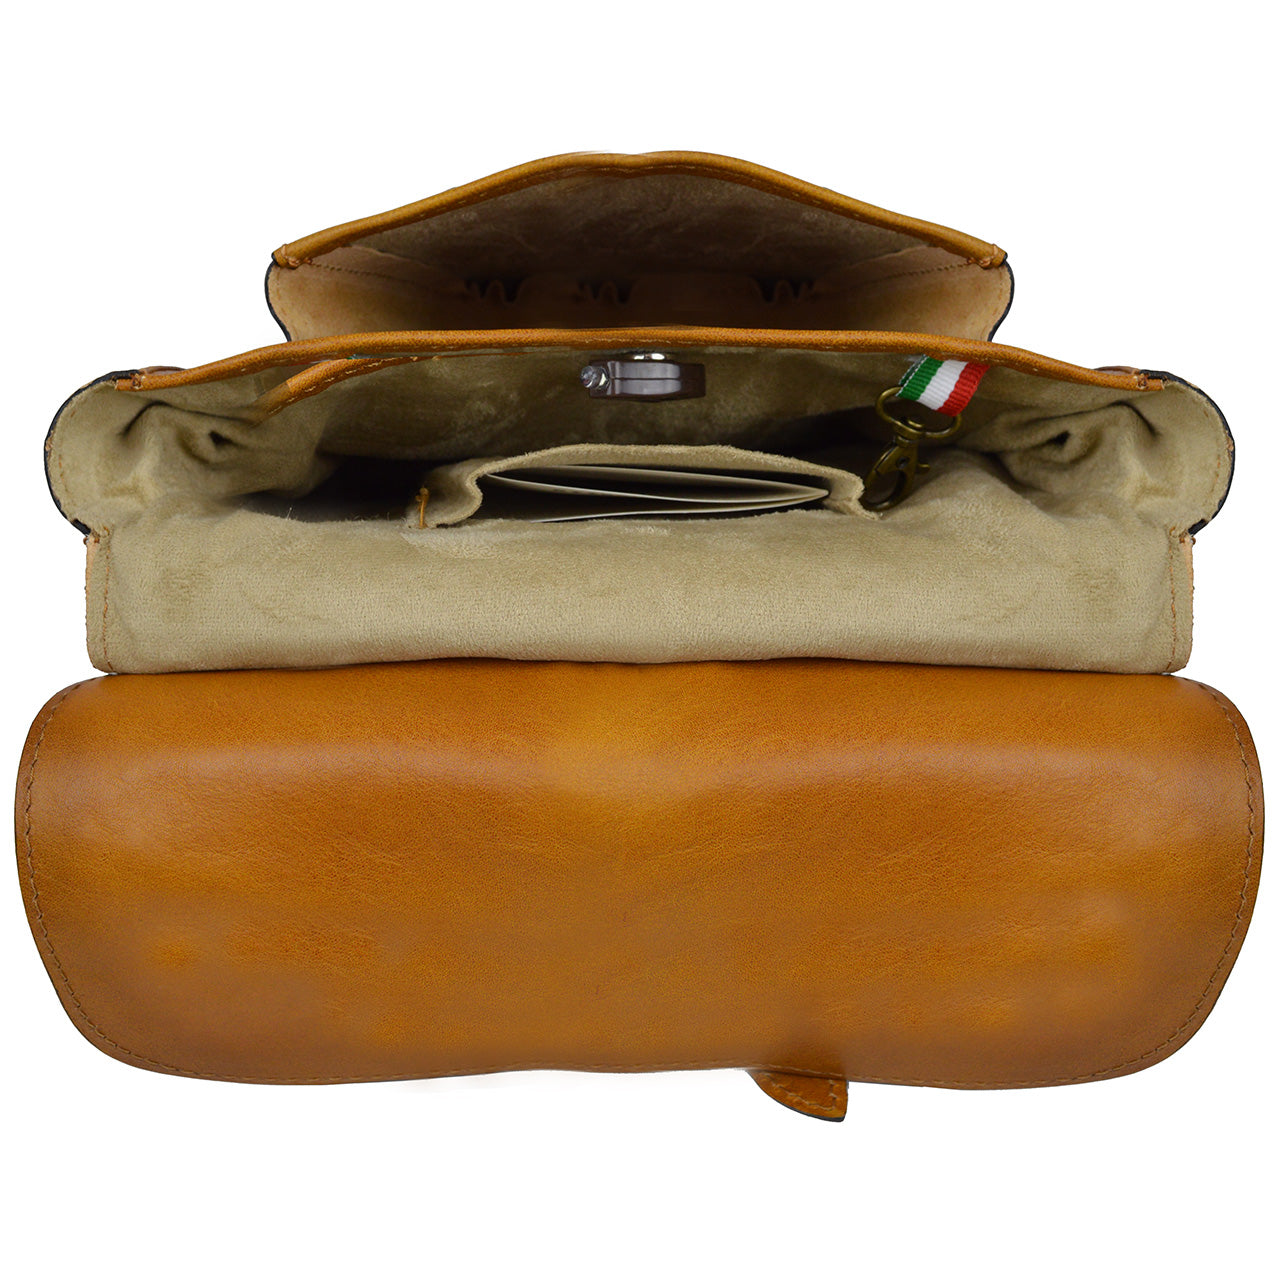 Pratesi Bisaccia Bag in genuine Italian leather